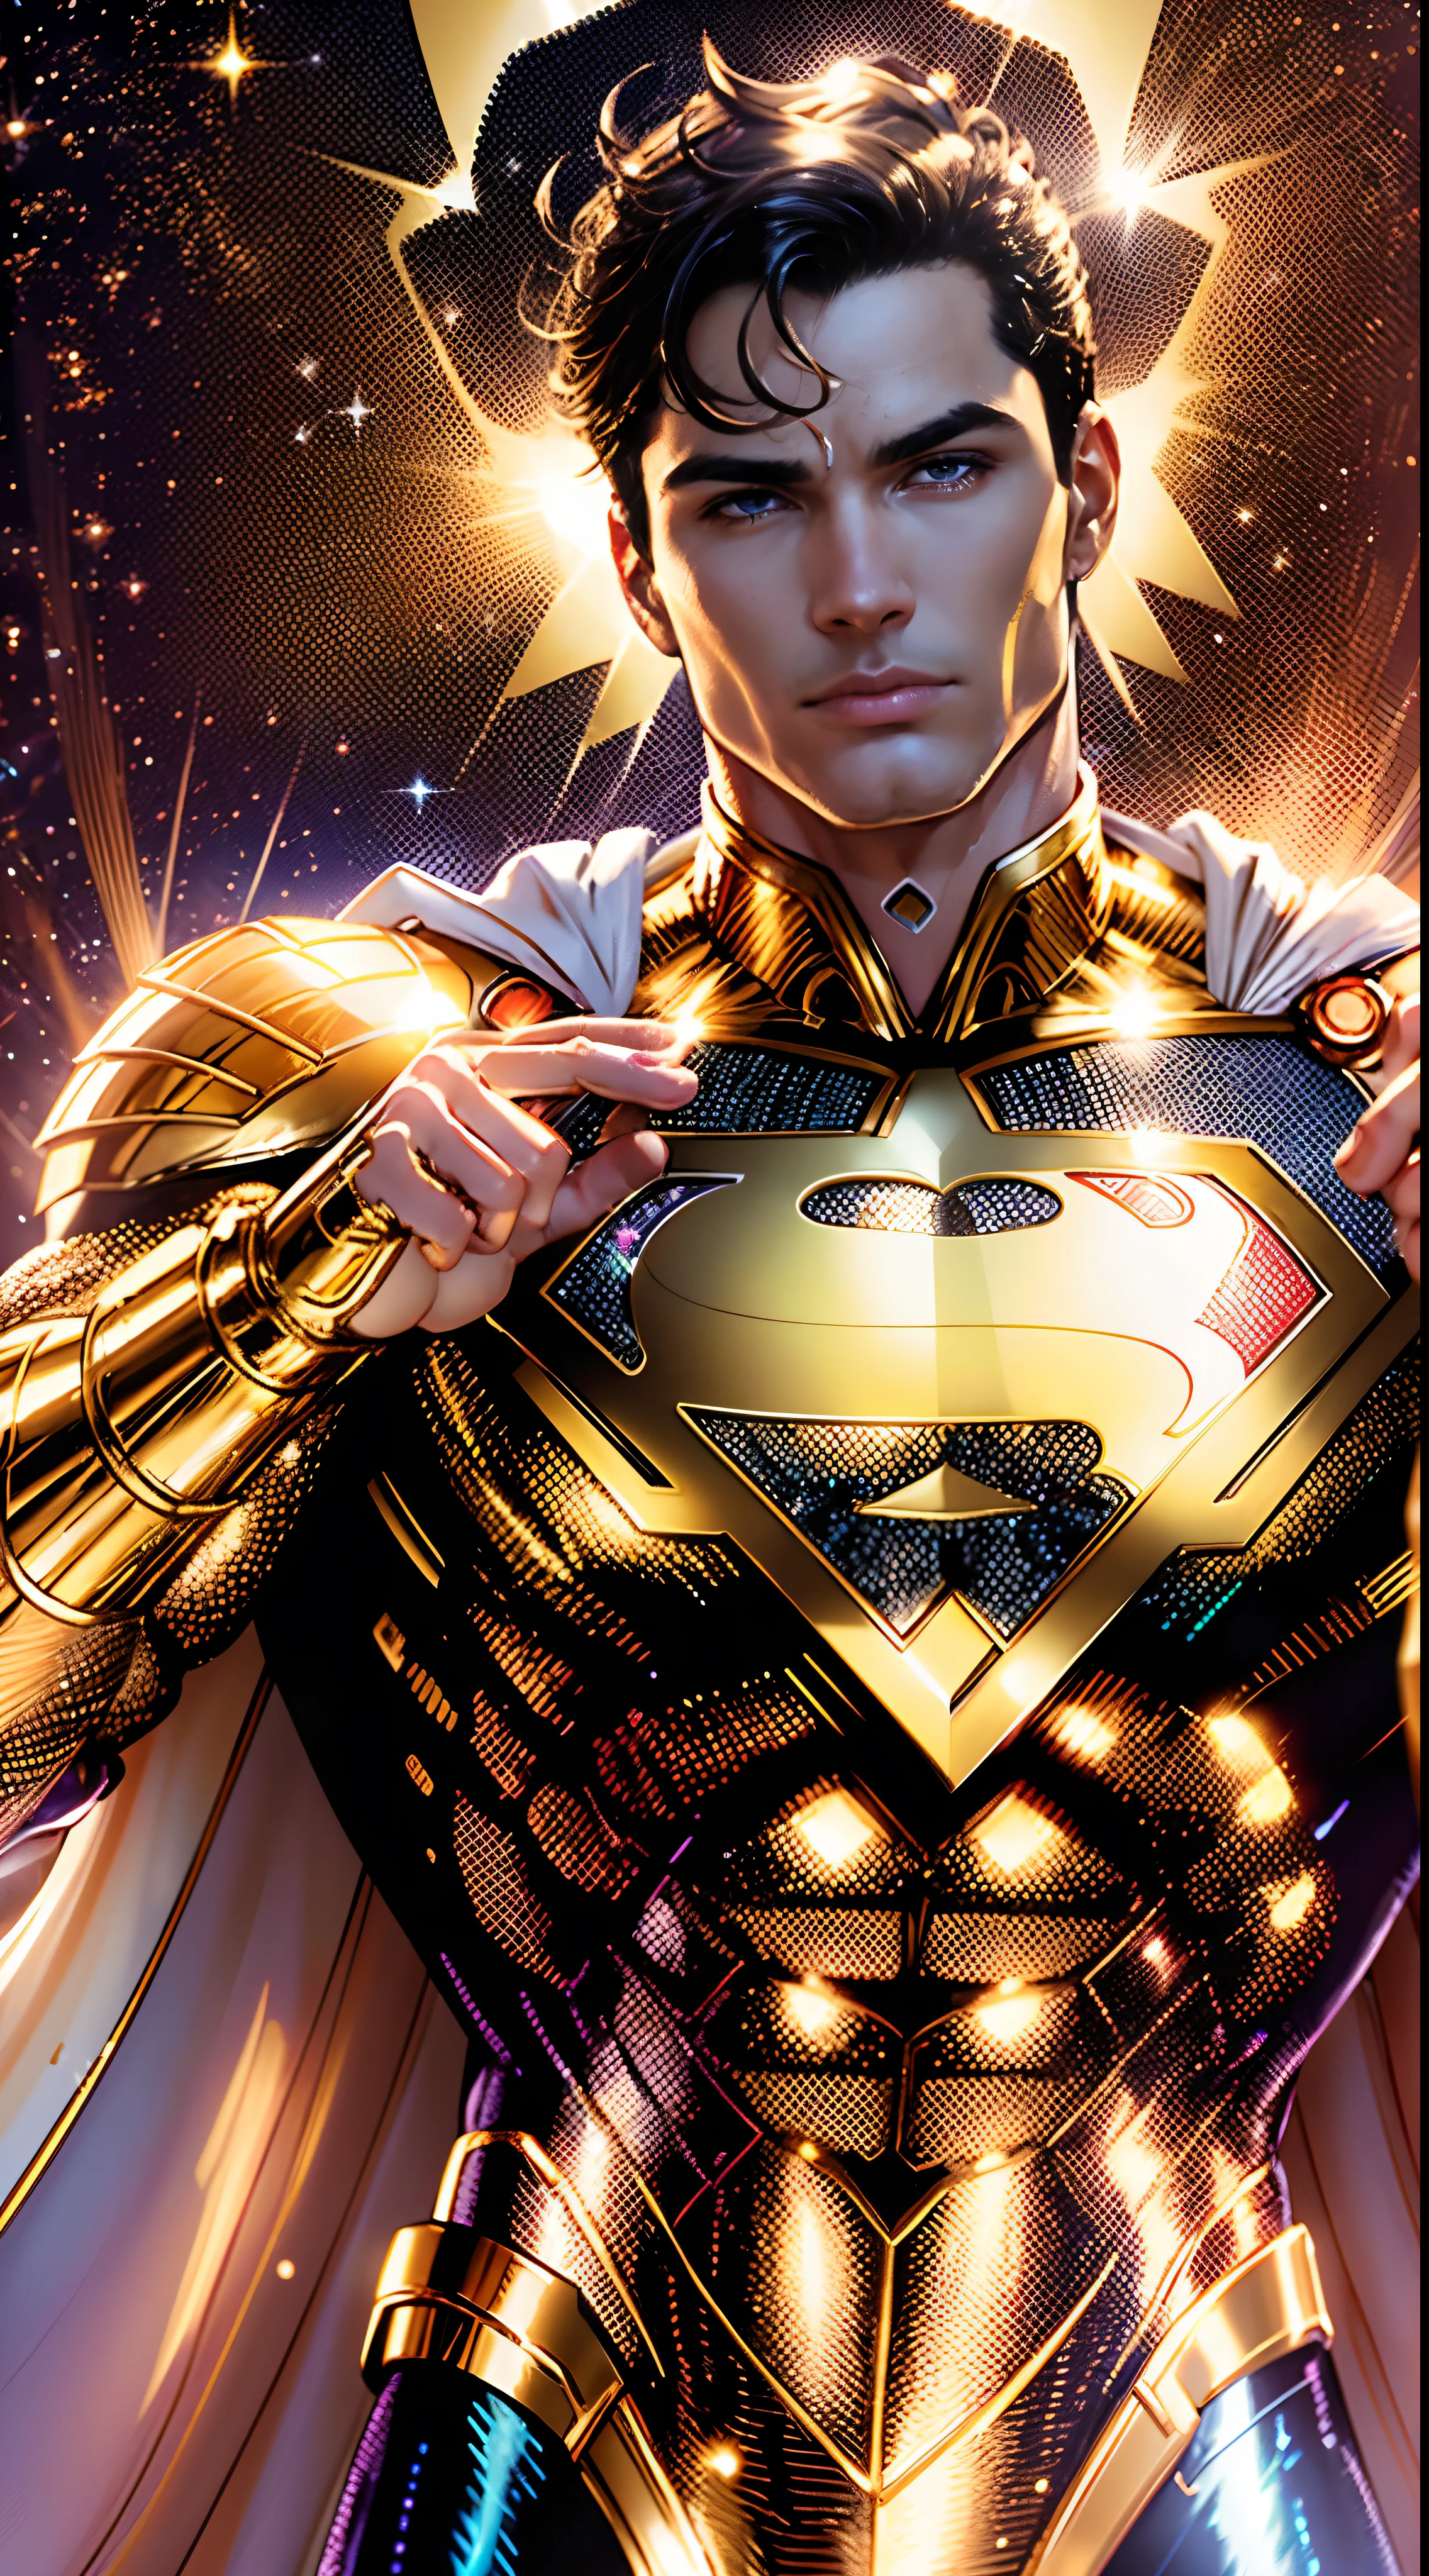 Superman doré, costume doré chatoyant avec Blanc Nacré, (fond d&#39;écran d&#39;unité CG 8k extrêmement détaillé, Uniforme doré, costume de Superman en or et en or, chef-d&#39;œuvre, meilleure qualité, Ultra-détaillé), (meilleur éclairage, Meilleure ombre, extrêmement délicat et beau), Flottant, [(((1 homme))), (Superman: 1.3), Muscles, lignes bleu vif, costume détaillé, pose héroïque):0.8], [(paysage céleste, nuit, néons lumineux:1.2,  effets de l&#39;énergie bleue, lumière volumétrique):0.5]